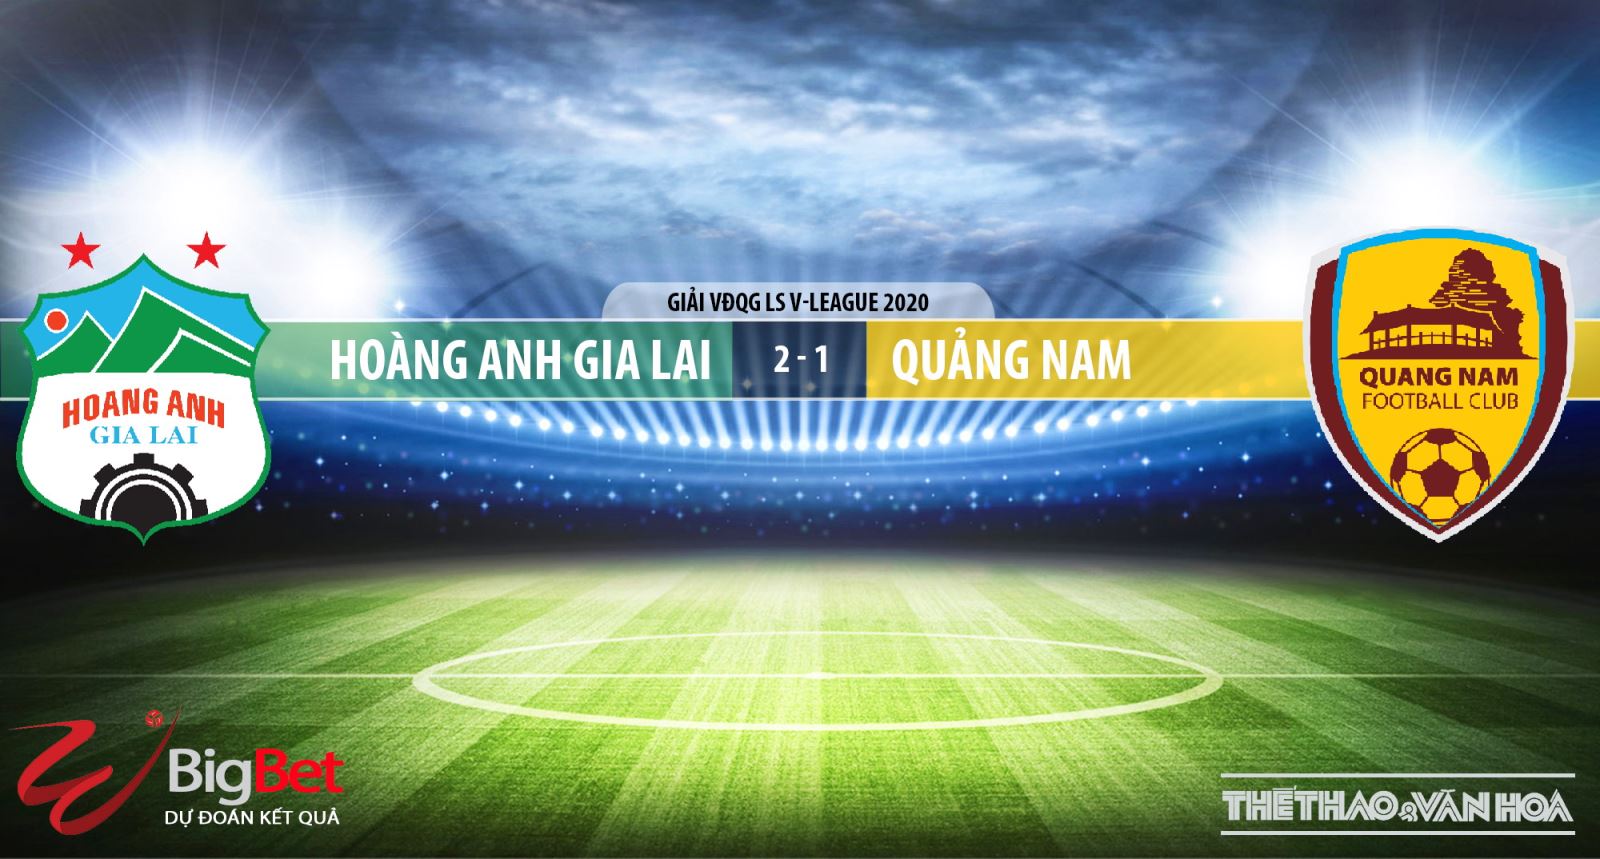 Hoàng Anh Gia Lai vs Quảng Nam, HAGL vs Quảng Nam, HAGL, Quảng Nam, nhận định bóng đá, kèo bóng đá, dự đoán, nhận định HAGL vs Quảng Nam